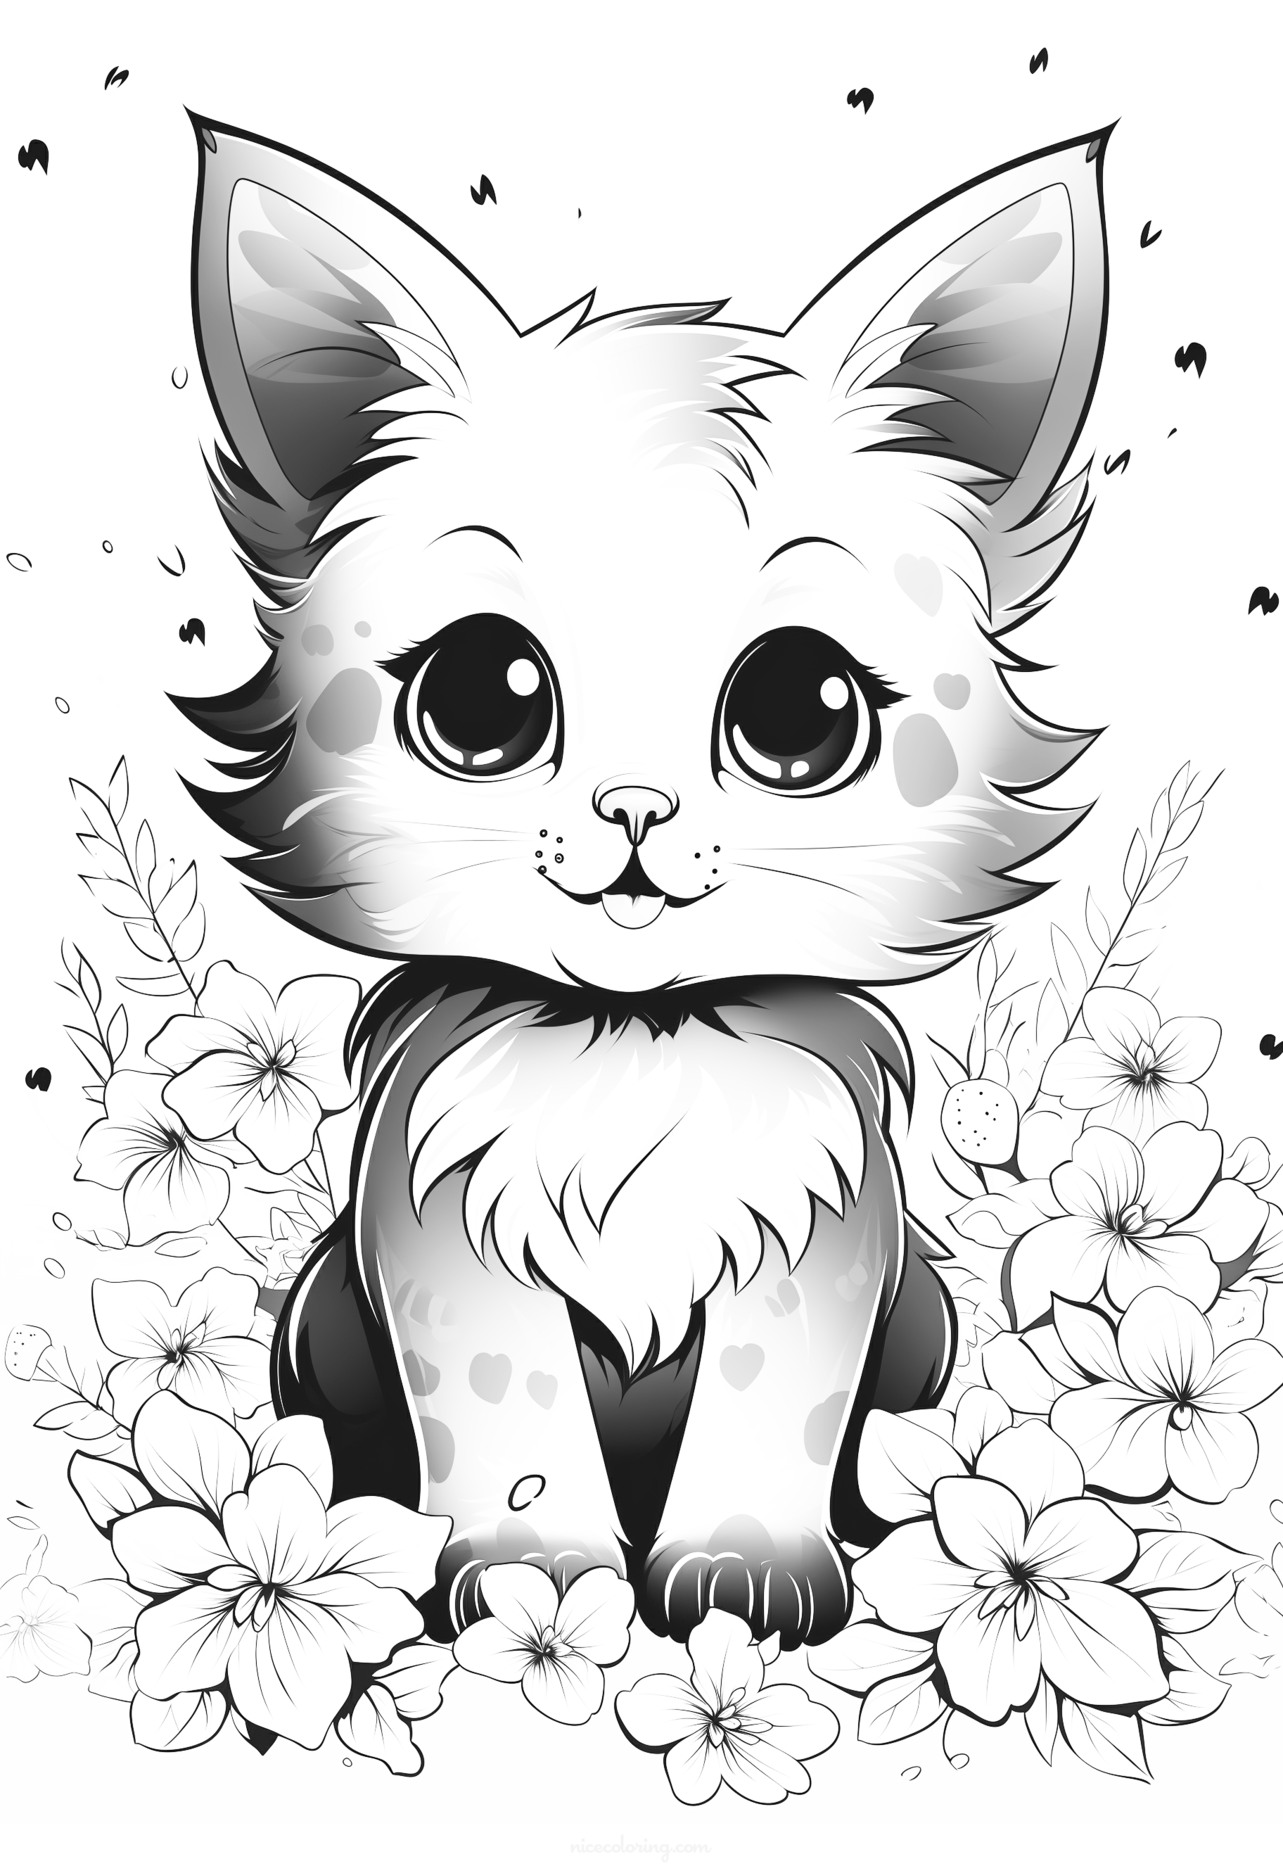 χαριτωμένη γάτα δίπλα σε γλάστρα με λουλούδια